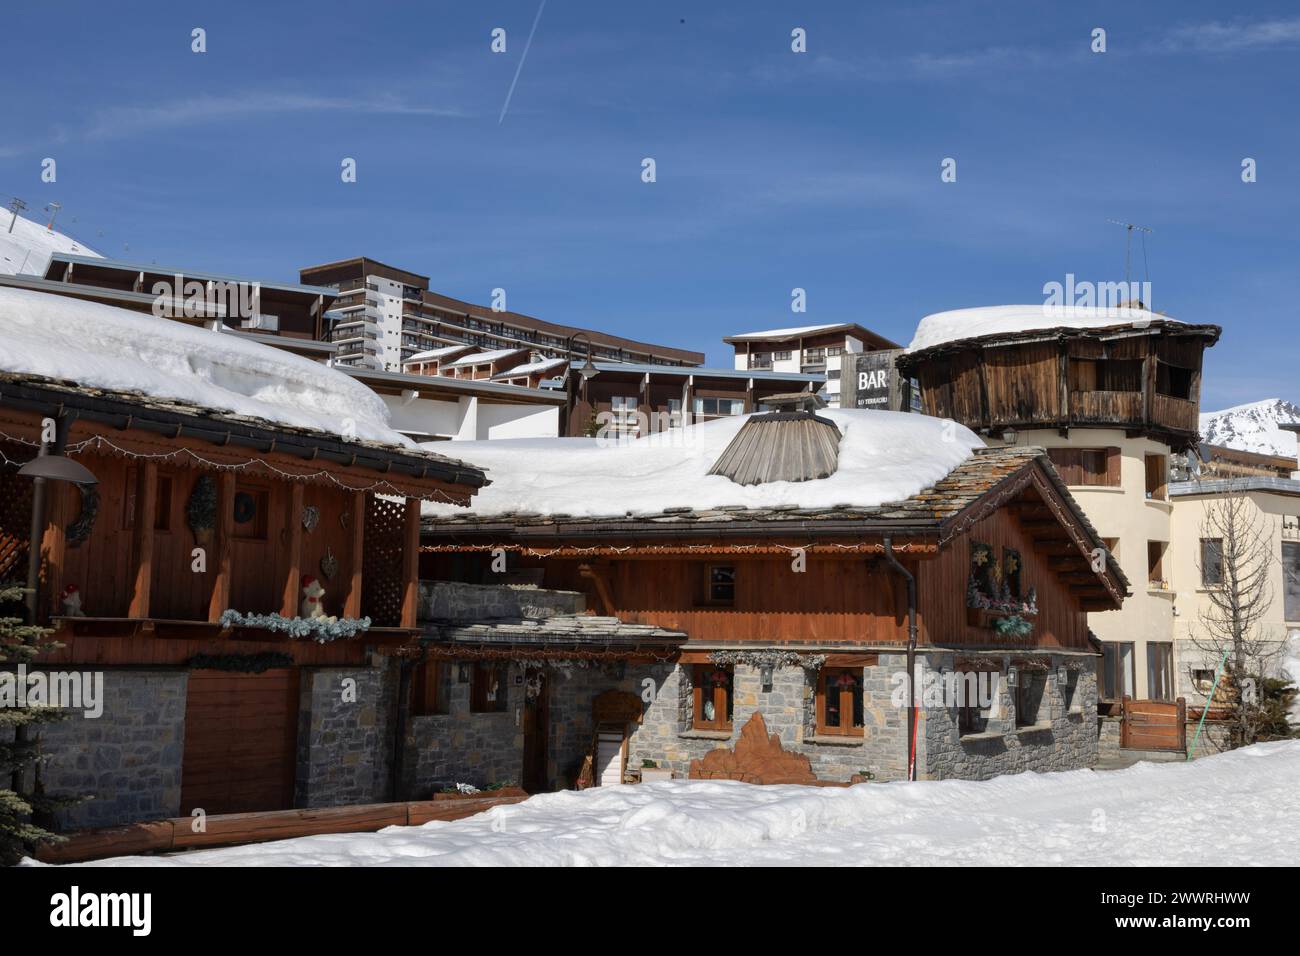 Un mix di stili architettonici di epoche diverse nel quartiere Lac di Tignes, una stazione sciistica nelle Alpi francesi. Foto Stock